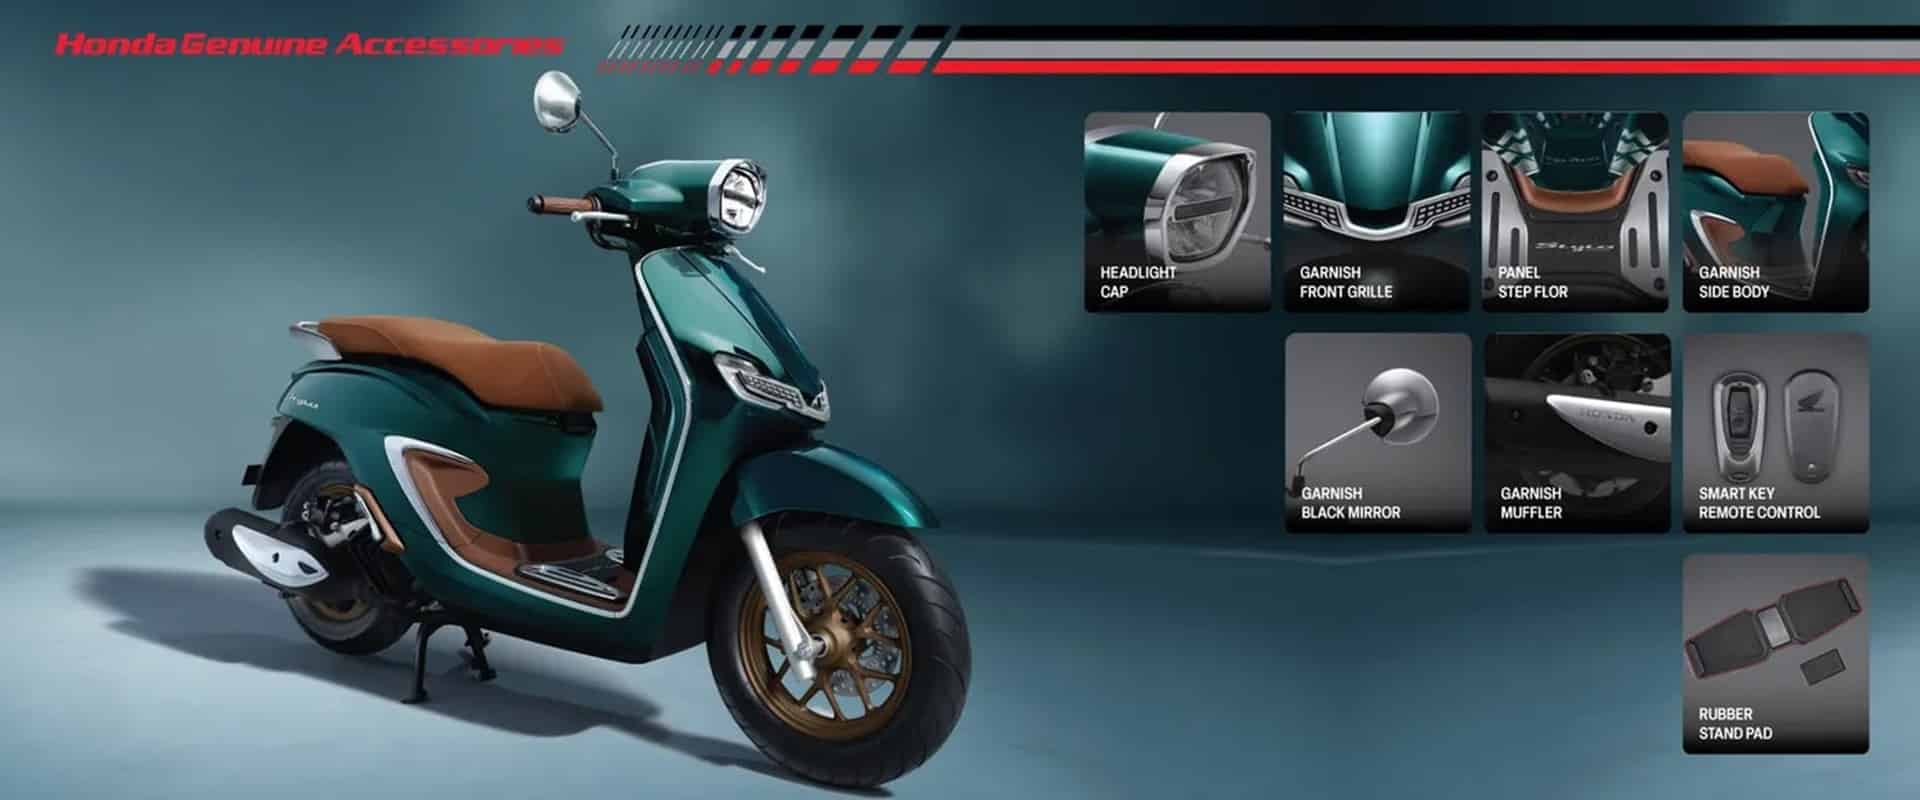 Stylo 160, el nuevo scooter de Honda con un diseño clásico y un toque glamuroso